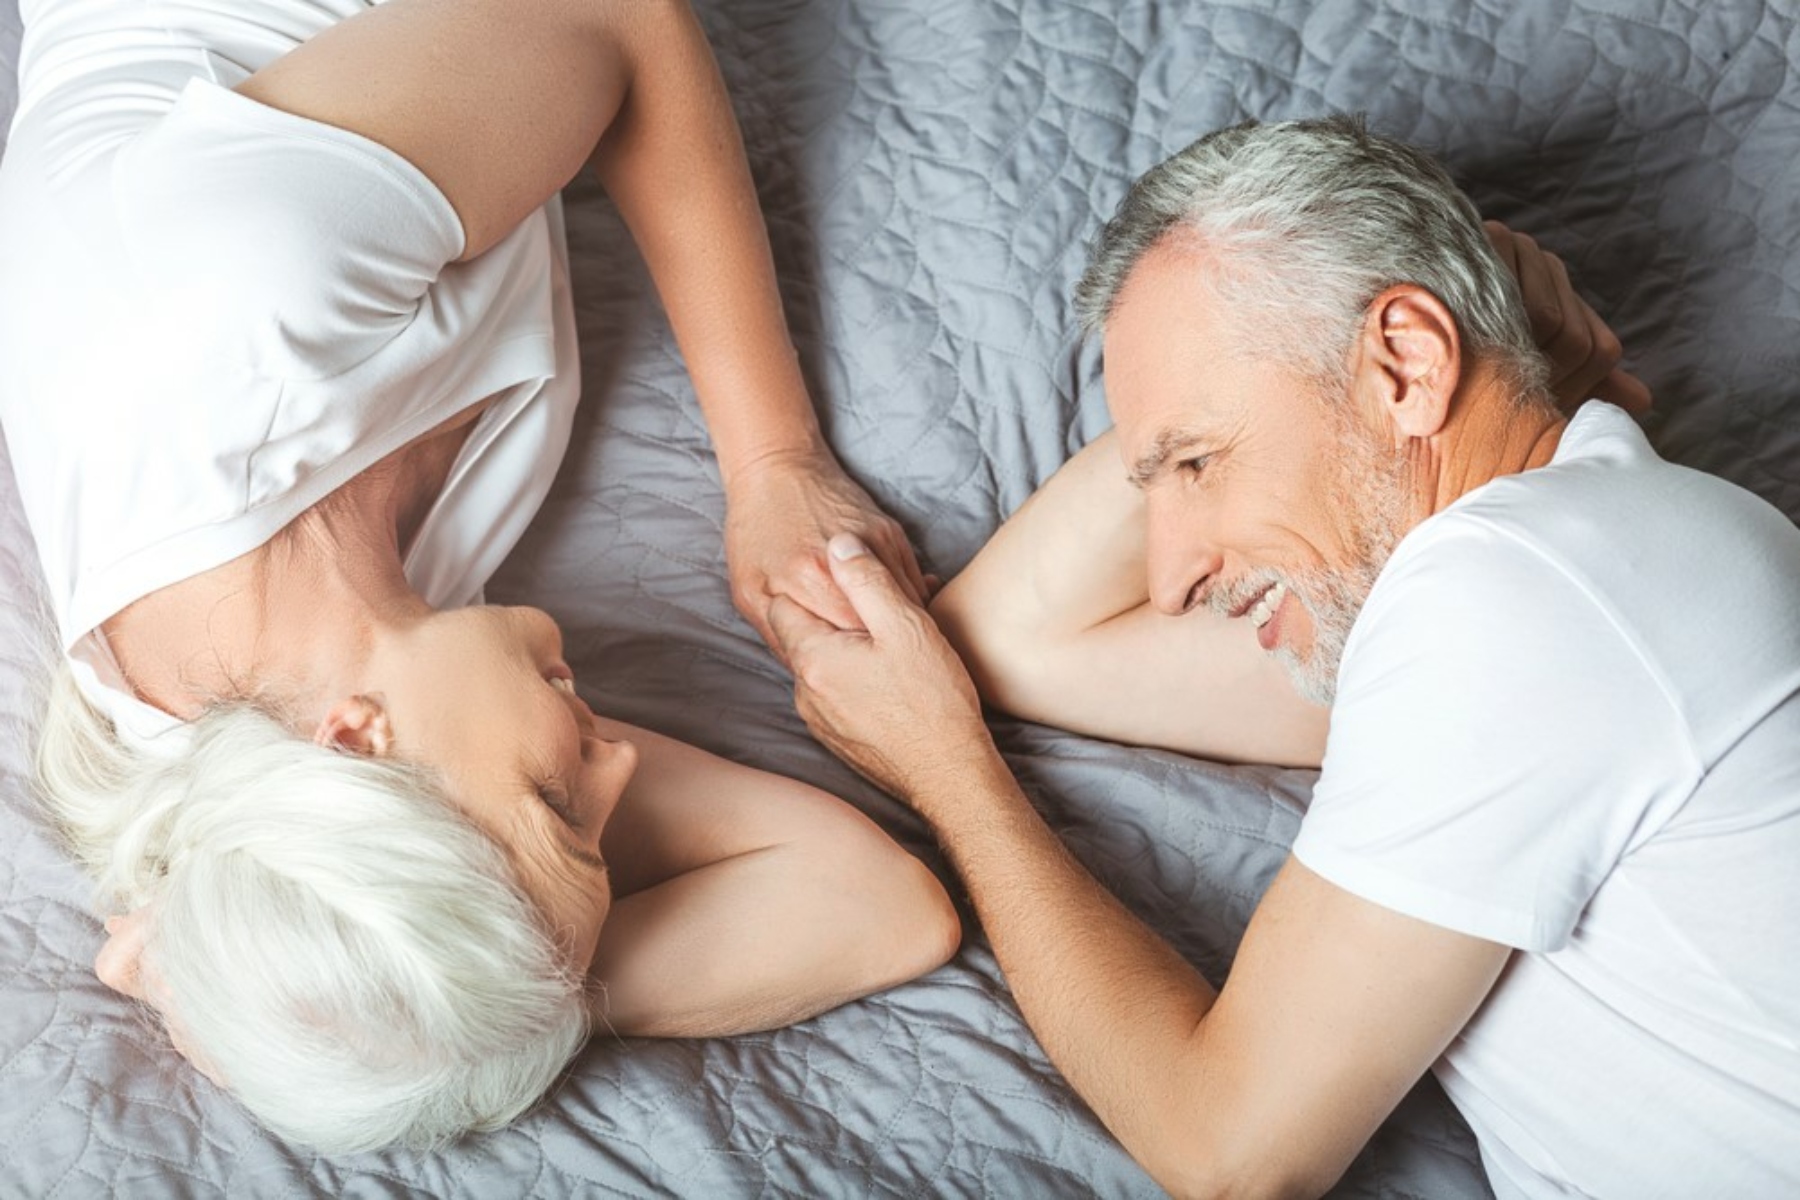 Σεξ μετά τα 60: Μπορεί να είναι απολαυστικό και ποιες προκλήσεις καλείστε να ξεπεράσετε;